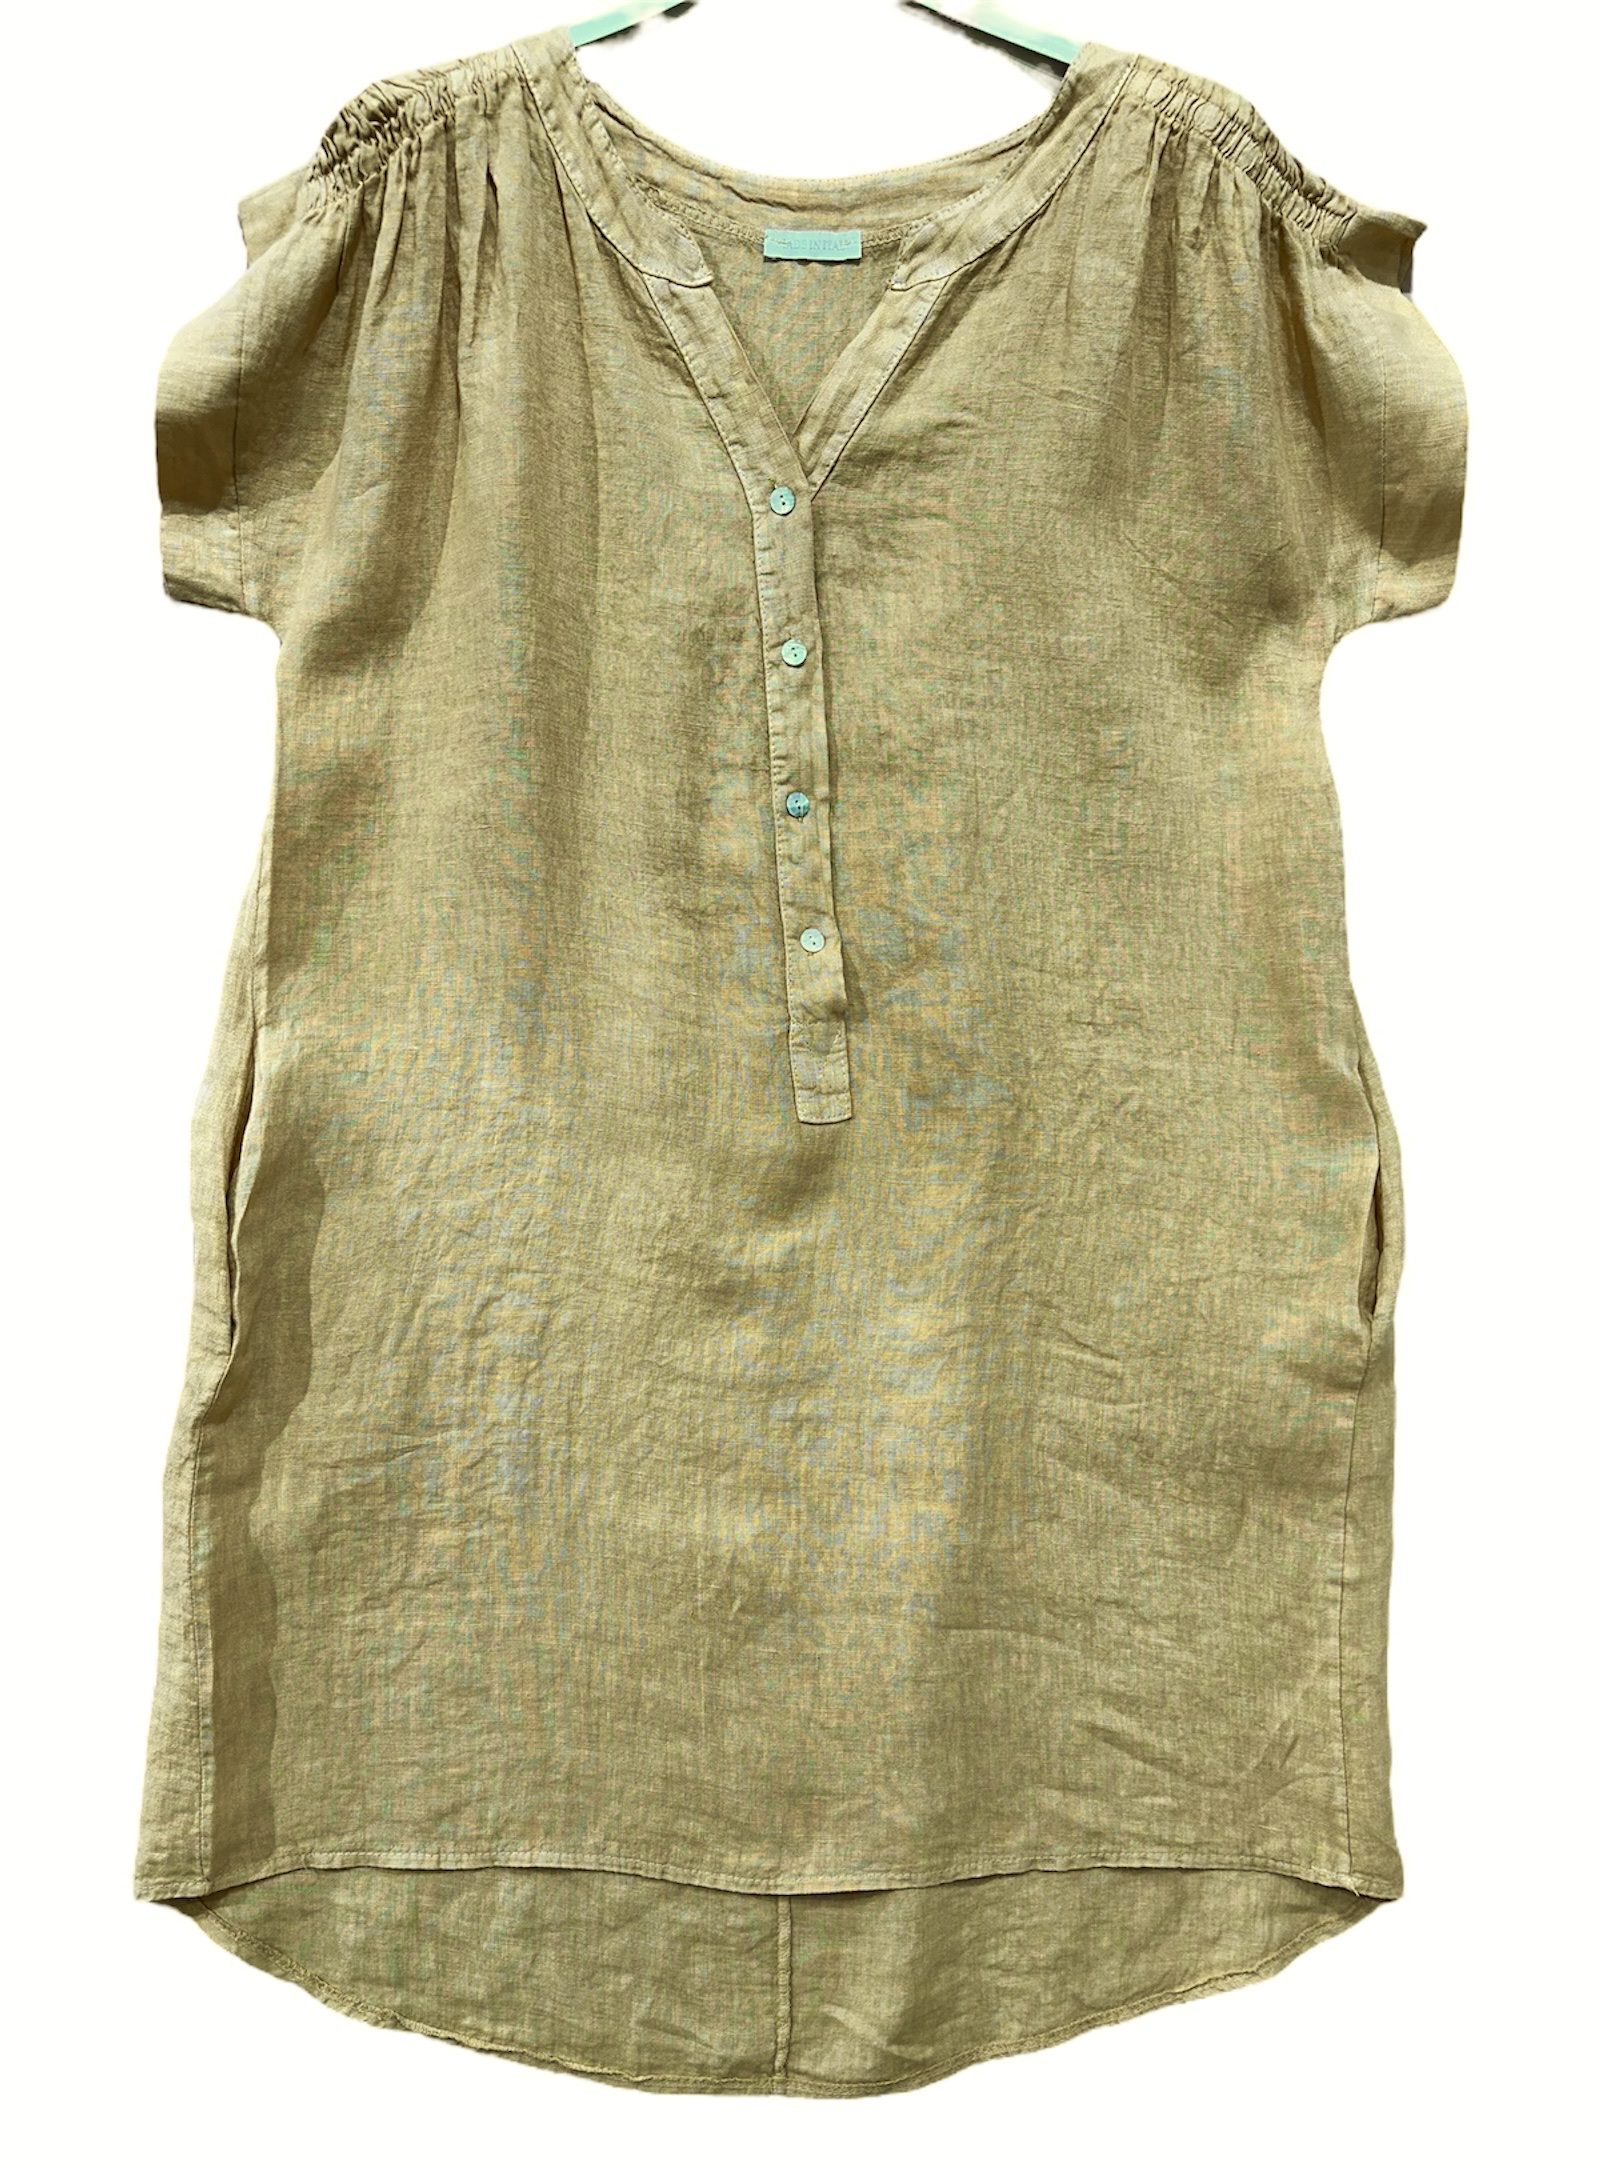 Luchtige linnen jurk- kleur CAMEL - korte raglan mouwen - zijzakken en knoppen - maat  42/44